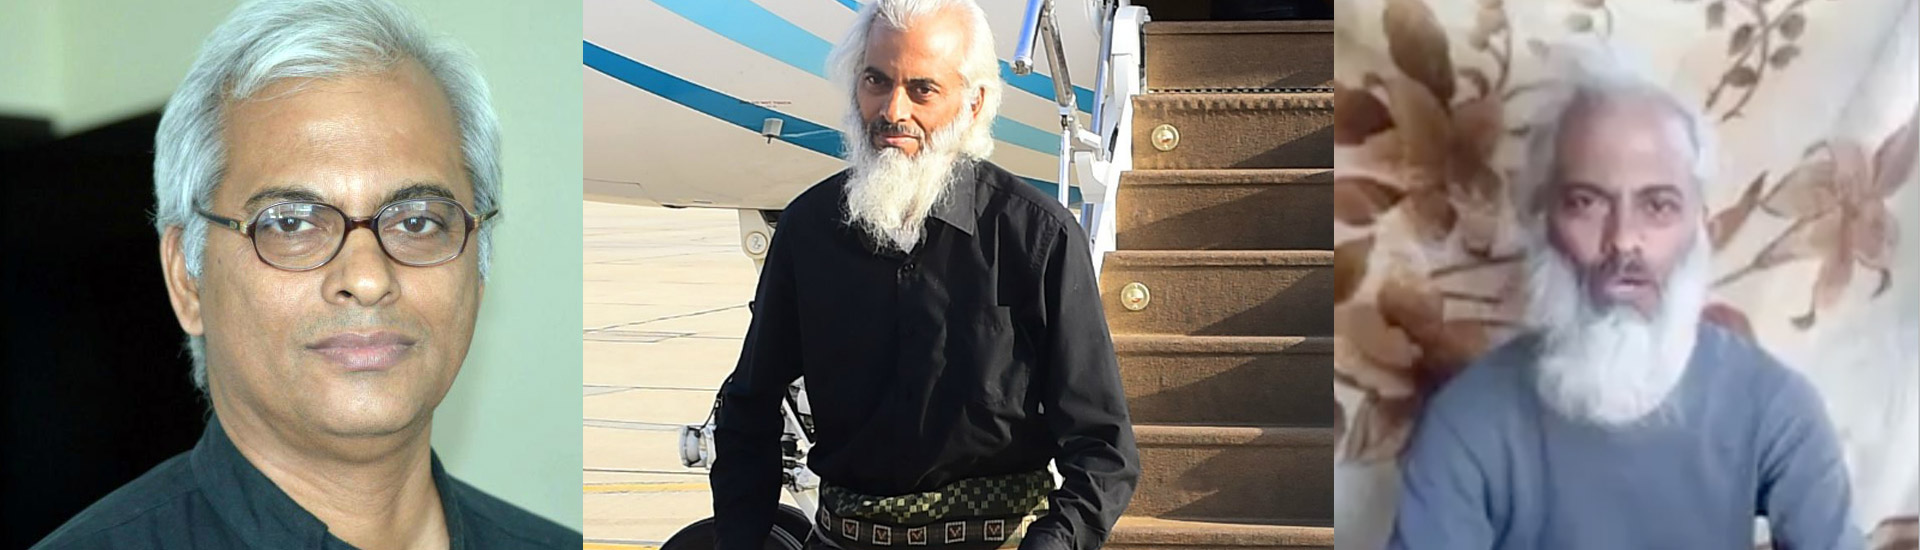 El misionero salesiano Tom Uzhunnalil, liberado en Yemen